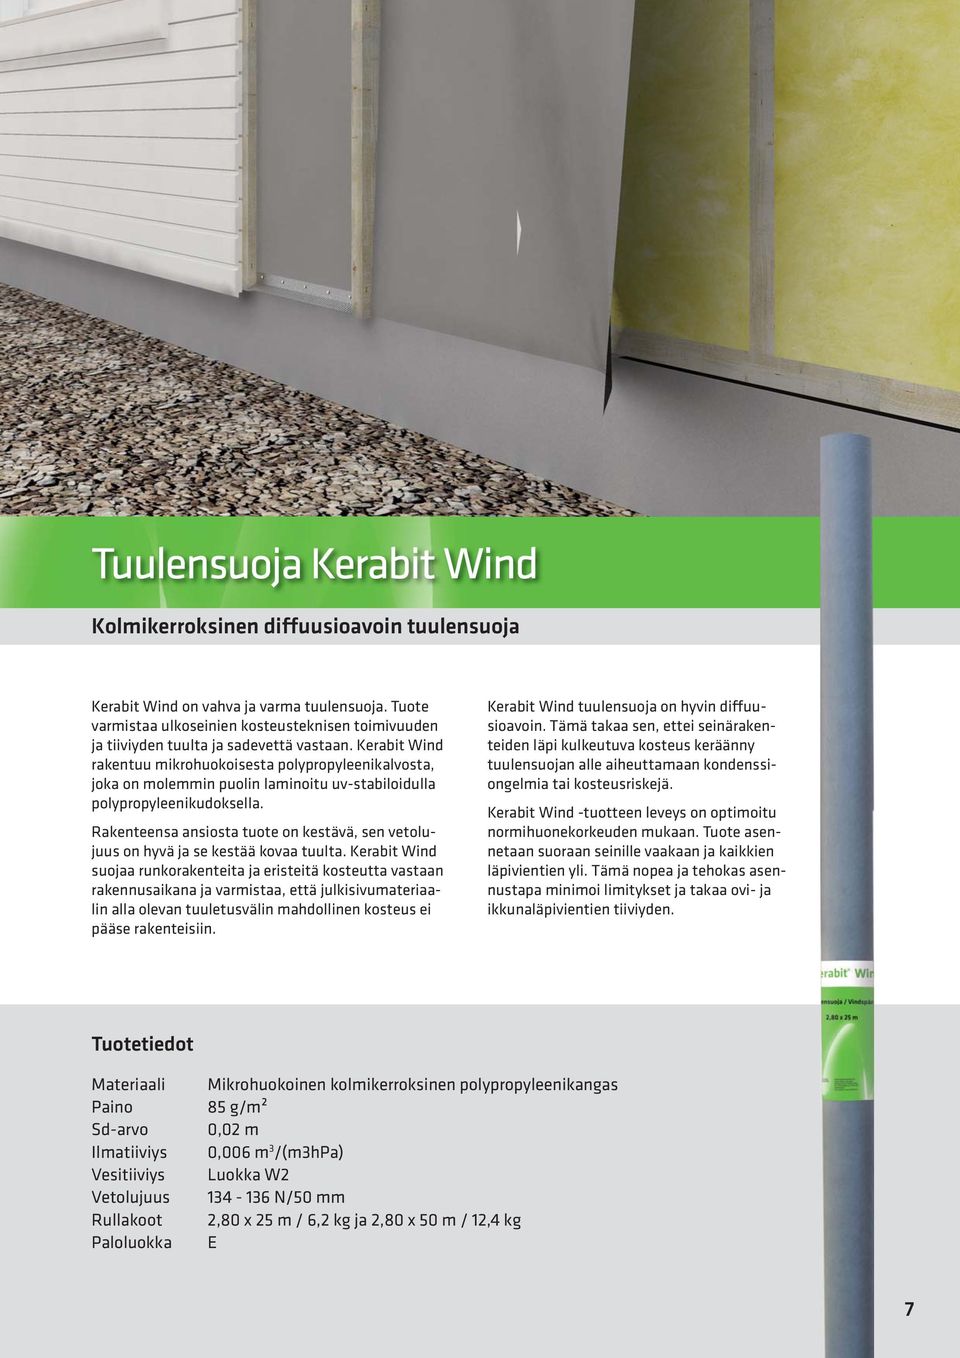 Kerabit Wind rakentuu mikrohuokoisesta polypropyleenikalvosta, joka on molemmin puolin laminoitu uv-stabiloidulla polypropyleenikudoksella.